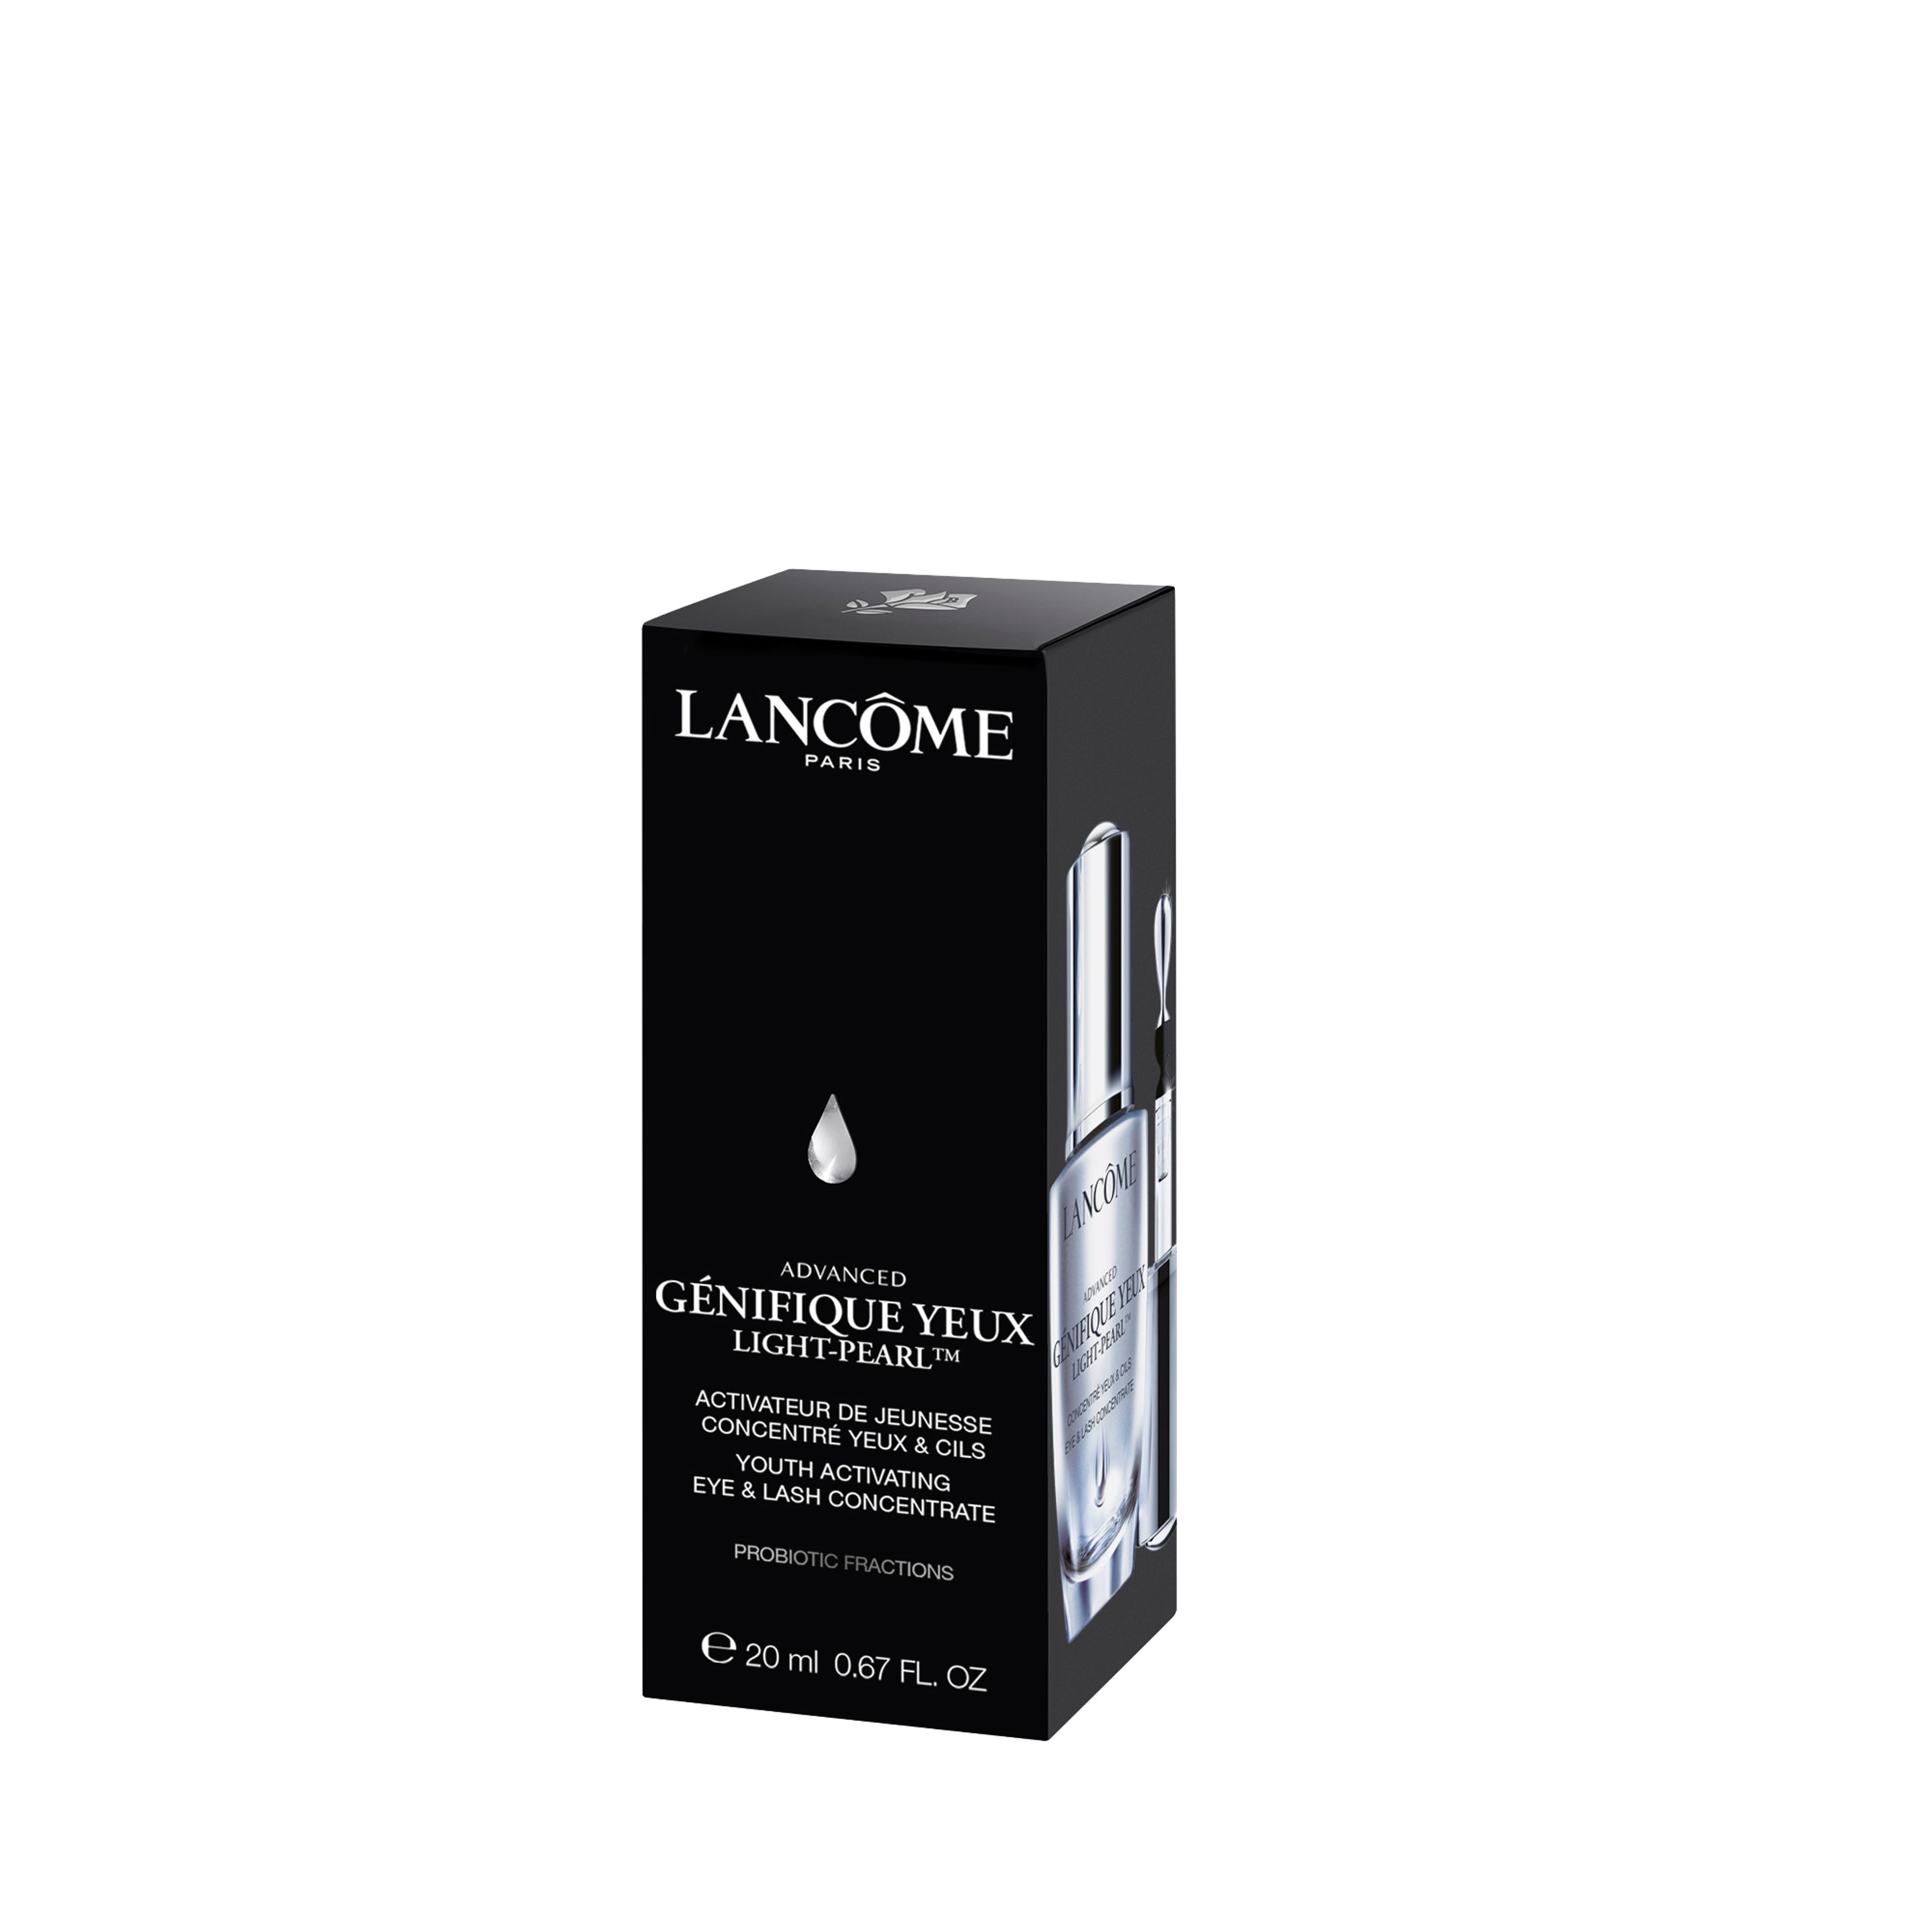 Advanced Génifique Light-pearl™ Siero Lancôme 4